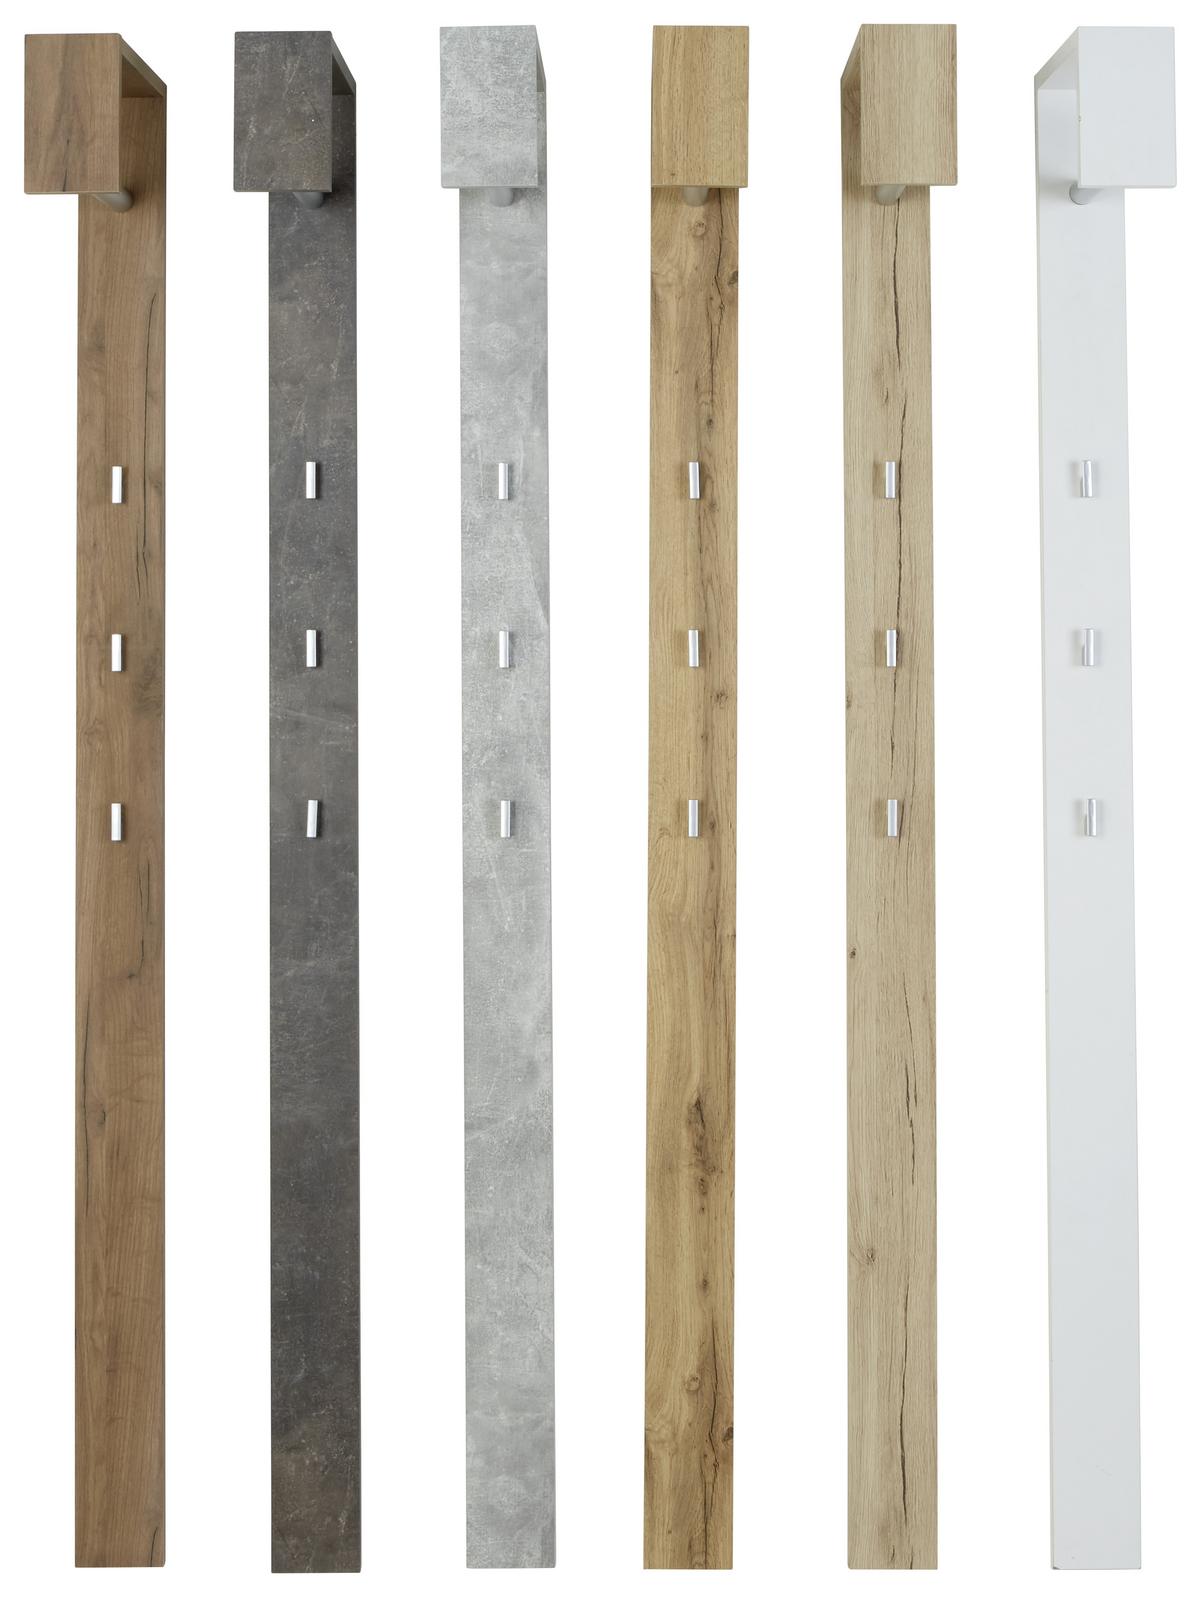 Šatní Panel Senex - barvy dubu, Moderní, dřevo (10/170/33cm)